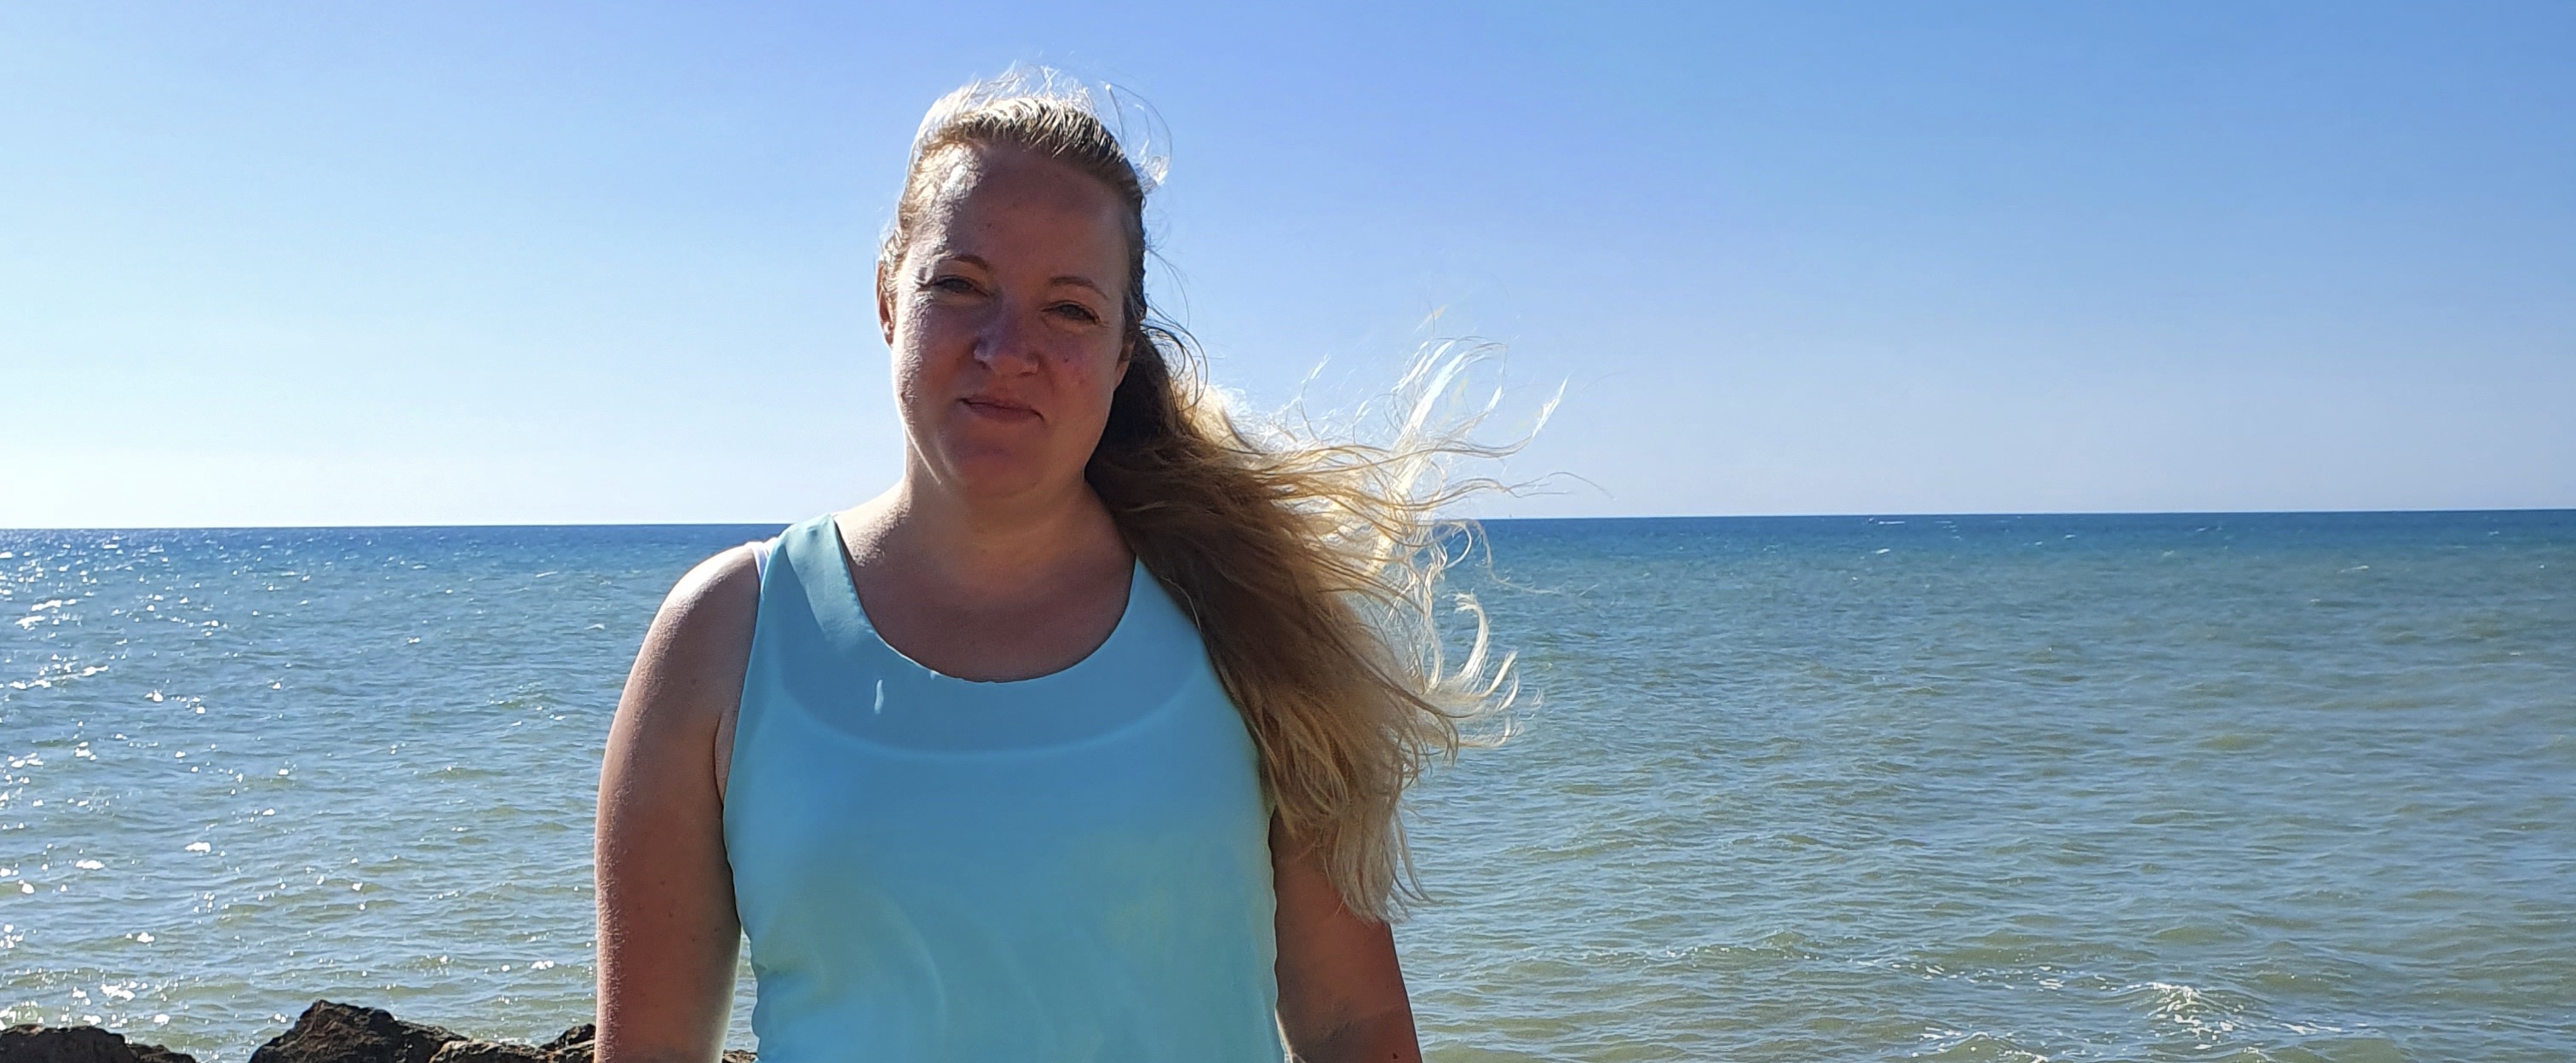 Susanne heeft endometriose: 'Ik kwam er vlak voor mijn dertigste verjaardag achter'